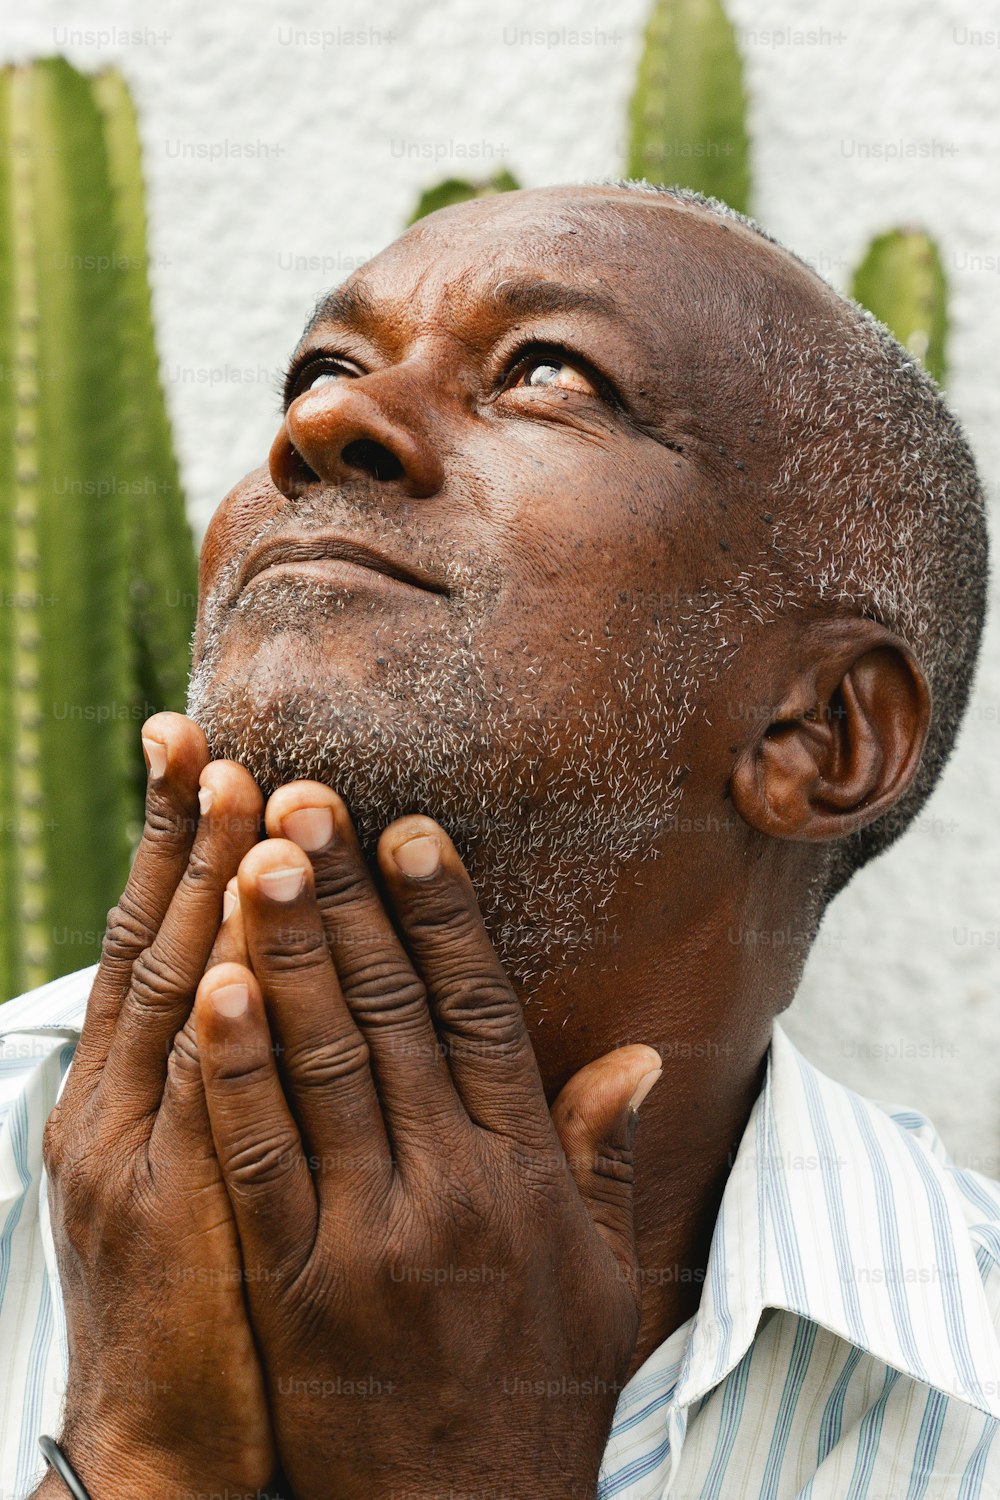 Un uomo sta pregando davanti a un cactus